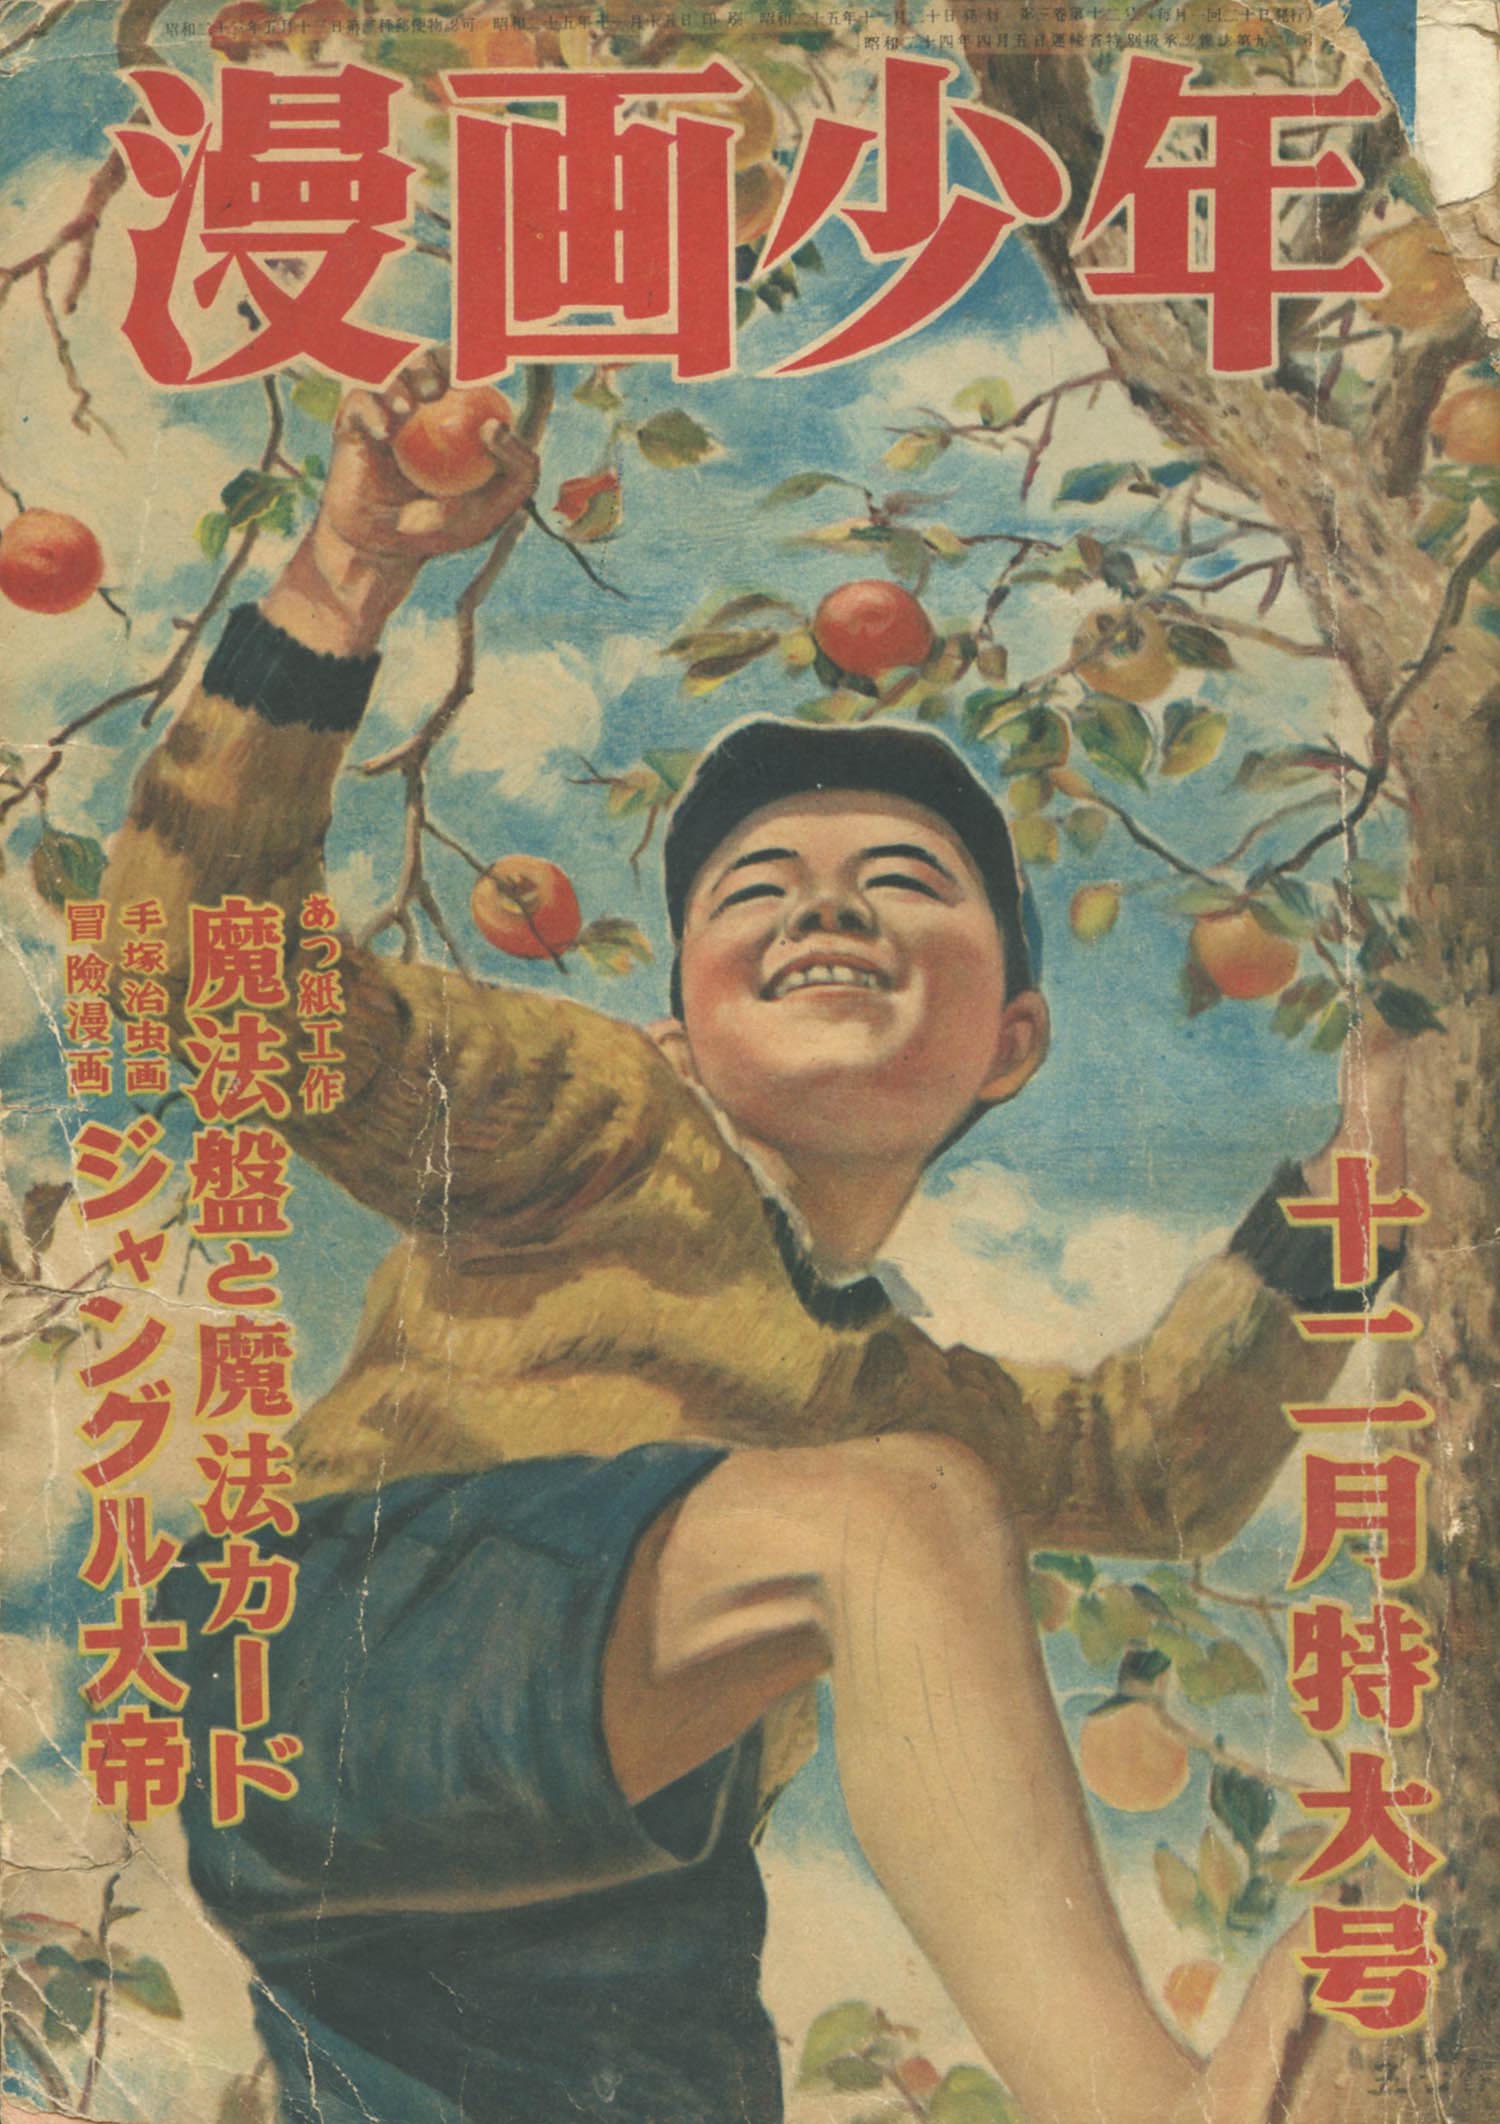 漫画少年 昭和25年12月号1950(S25)11.20